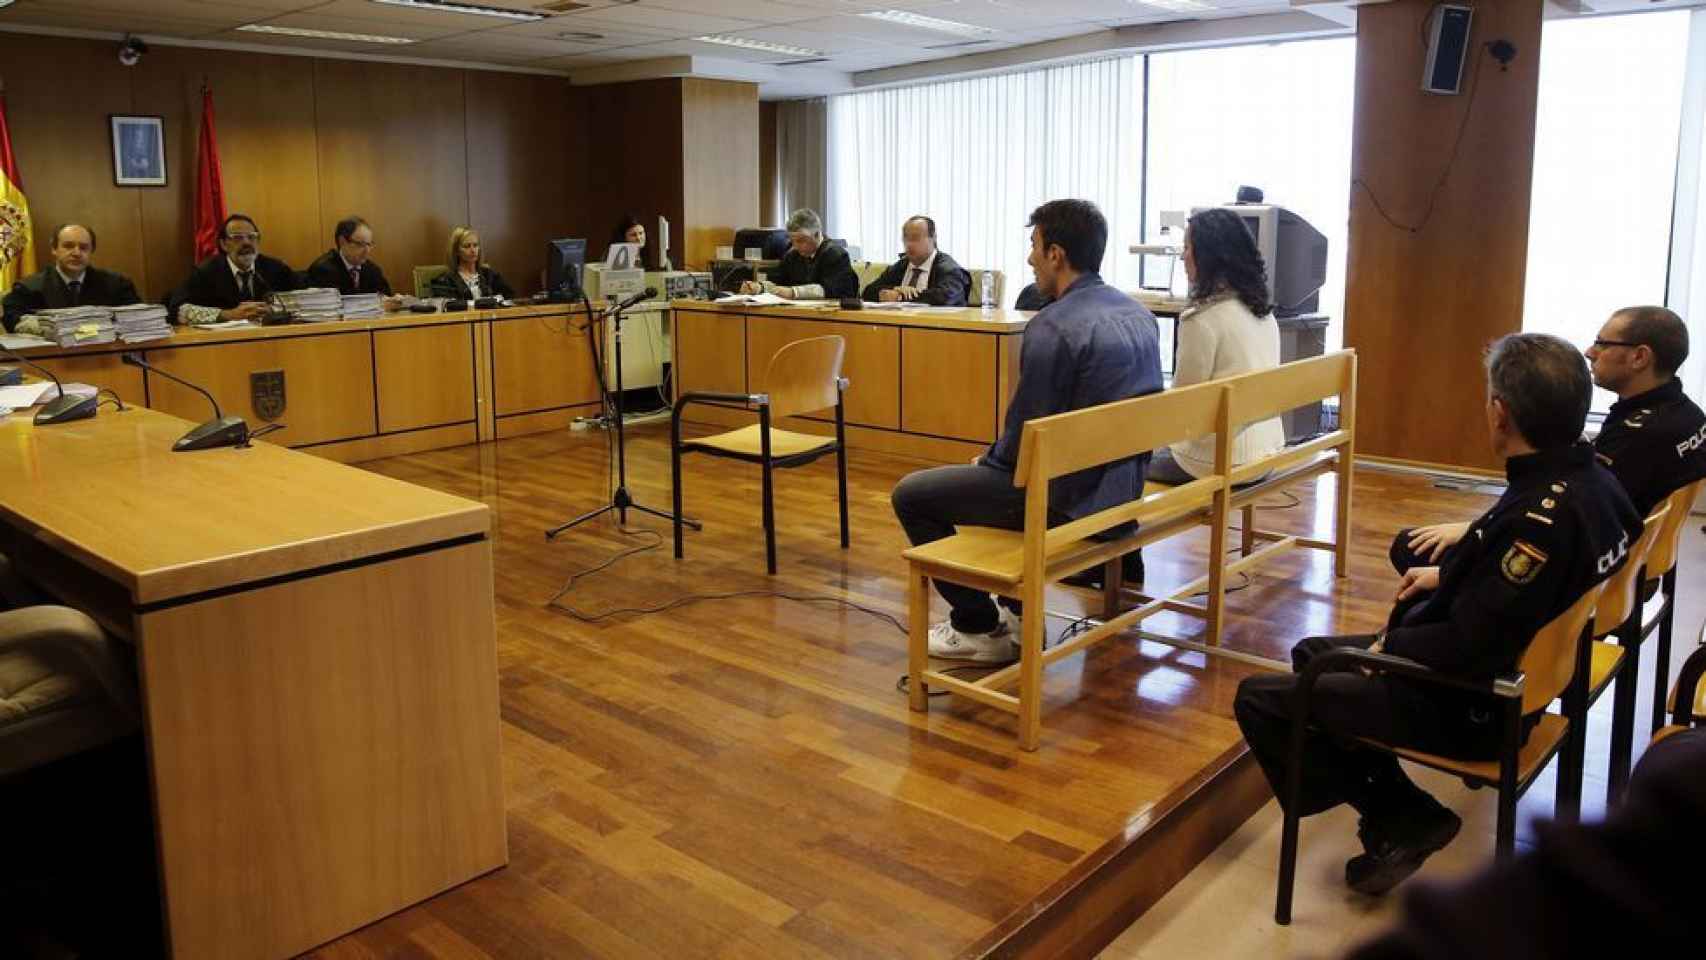 Lorena Gallego e Iván Trepiana, en el banquillo de los acusados durante el juicio.